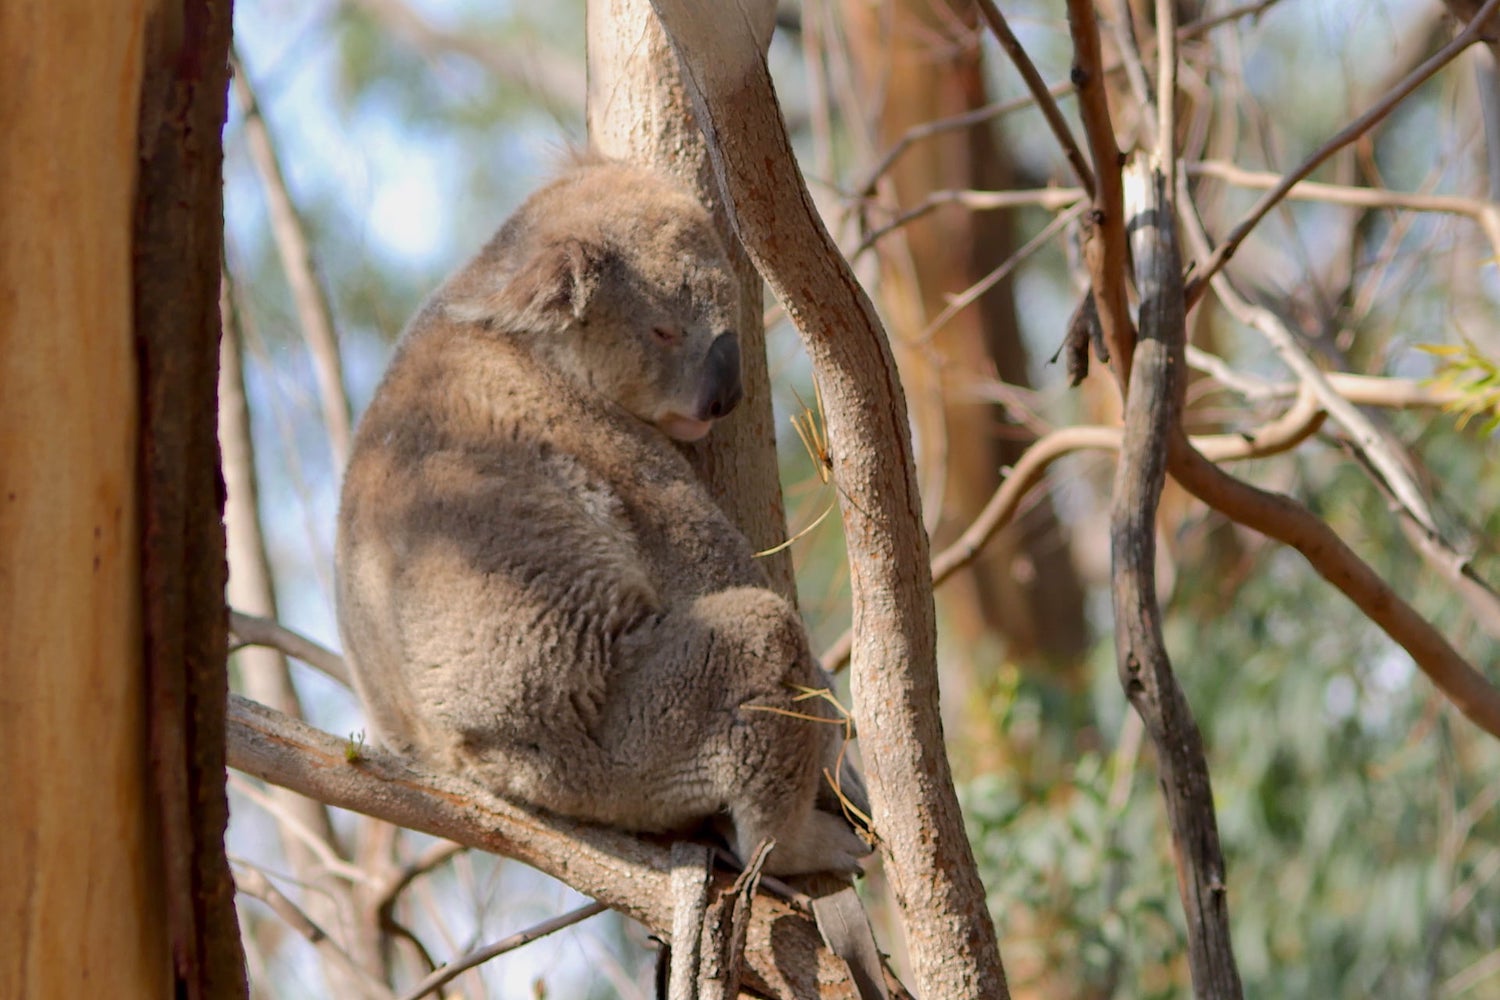 Koala in trees